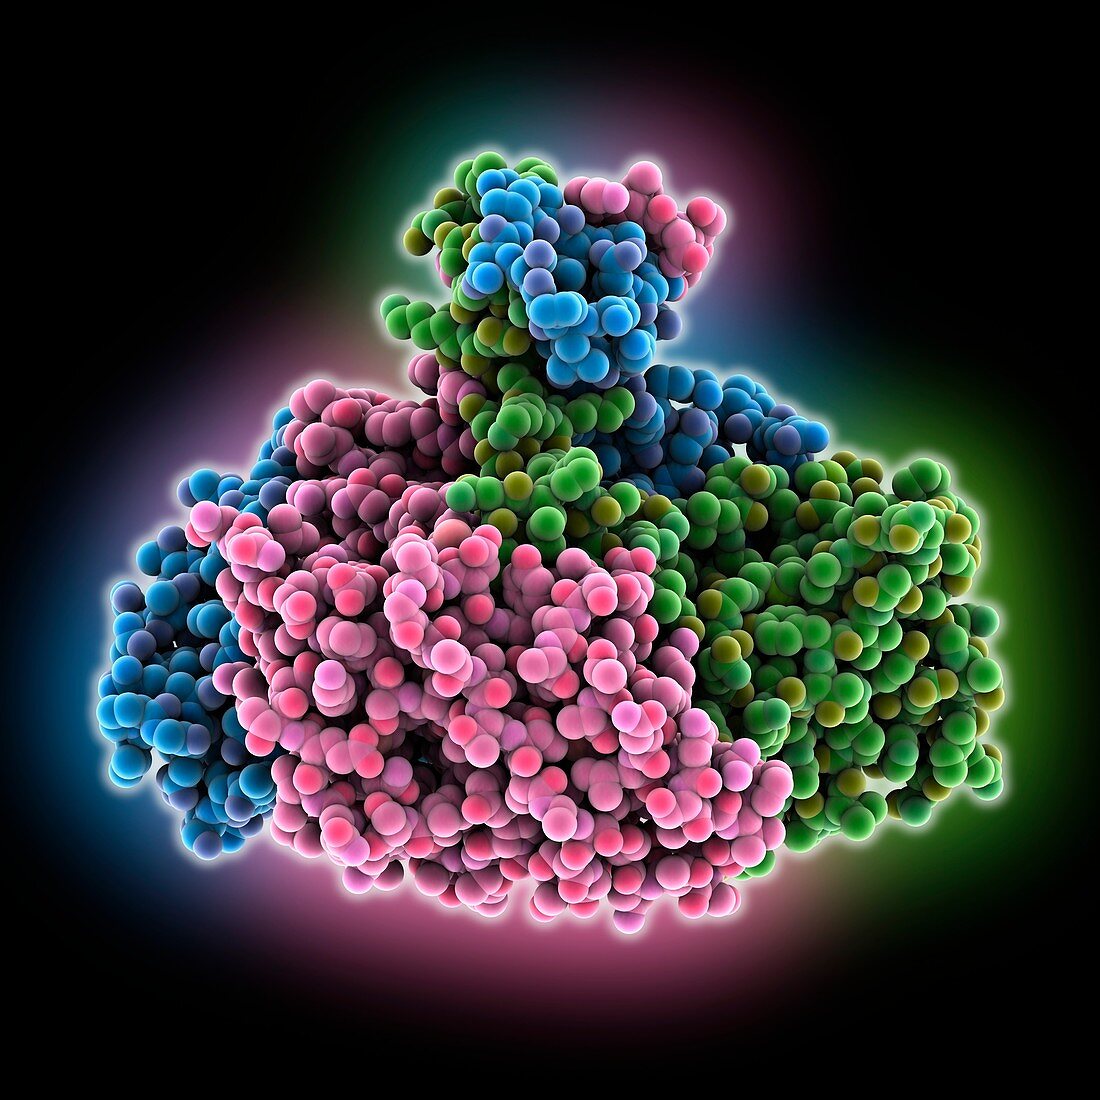 Banna virus outer coat protein, molecular model